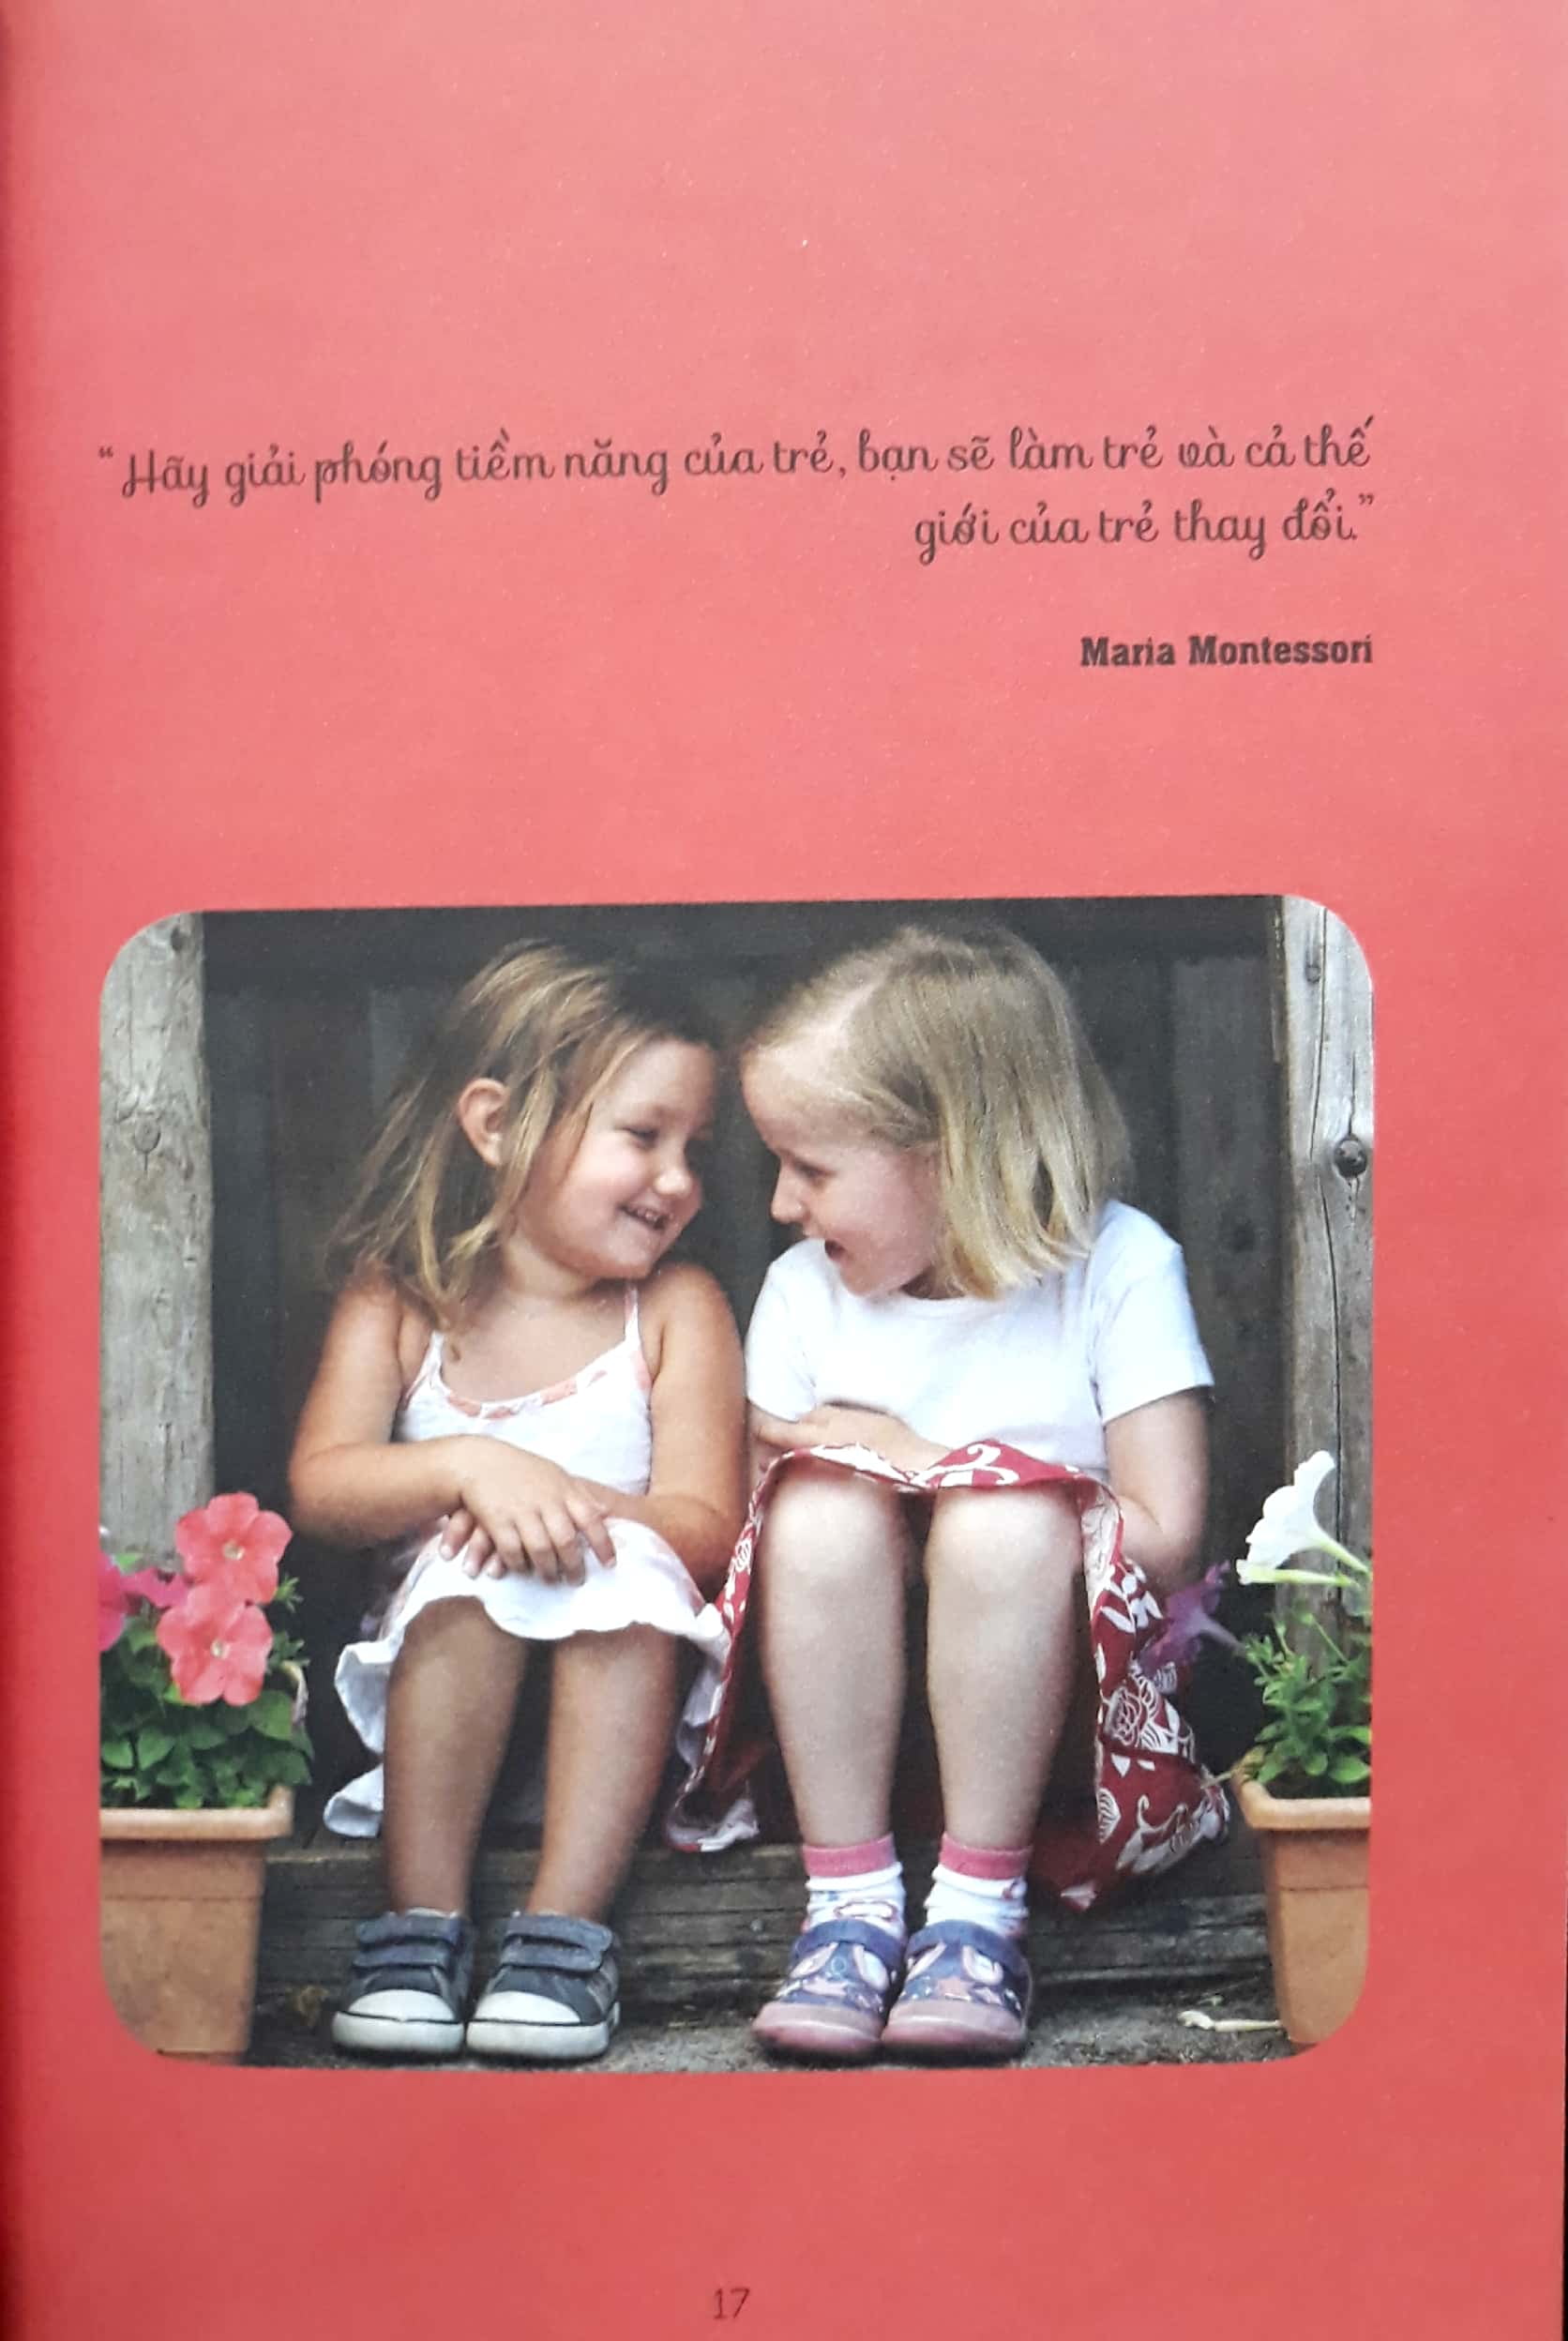 Học Montessori Để Dạy Trẻ Theo Phương Pháp Montessori - 100 Hoạt Động Montessori: Cha Mẹ Nên Chuẩn Bị Cho Trẻ Tập Đọc Và Viết Như Thế Nào? PDF